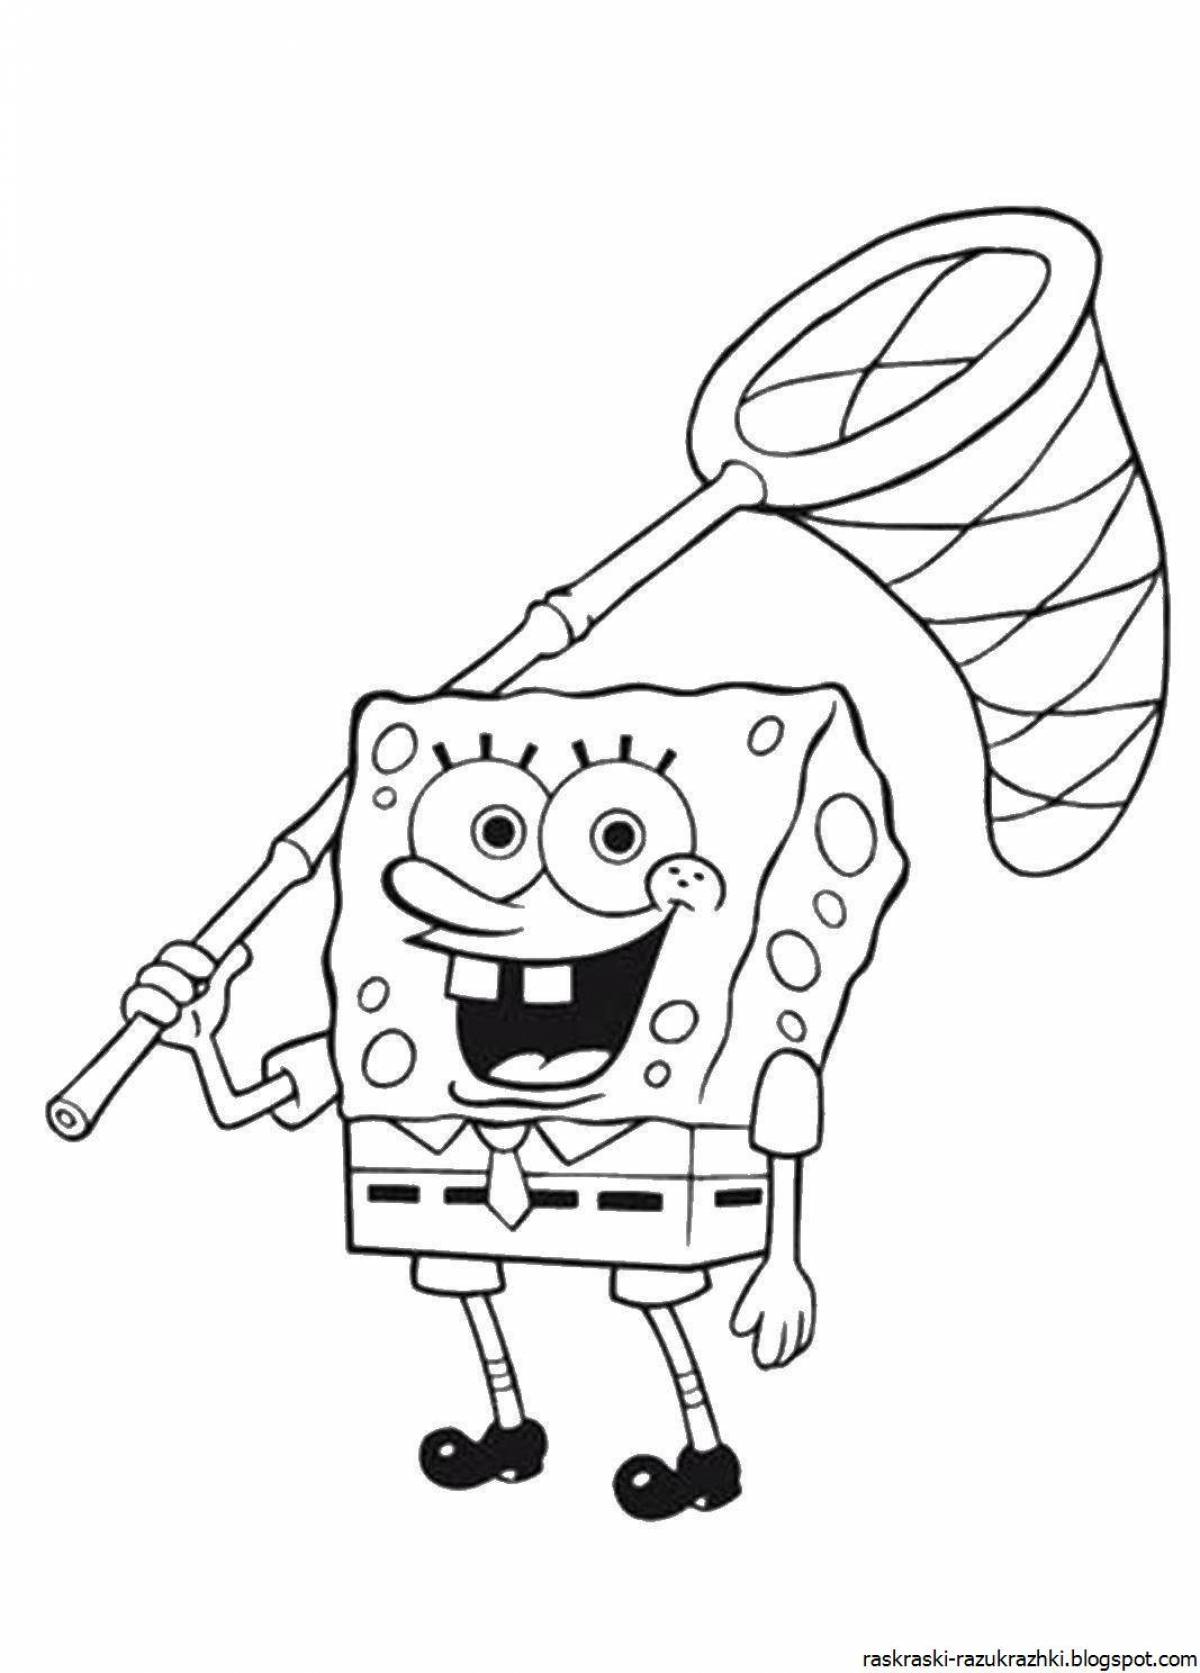 Fun coloring spongebob squarepants